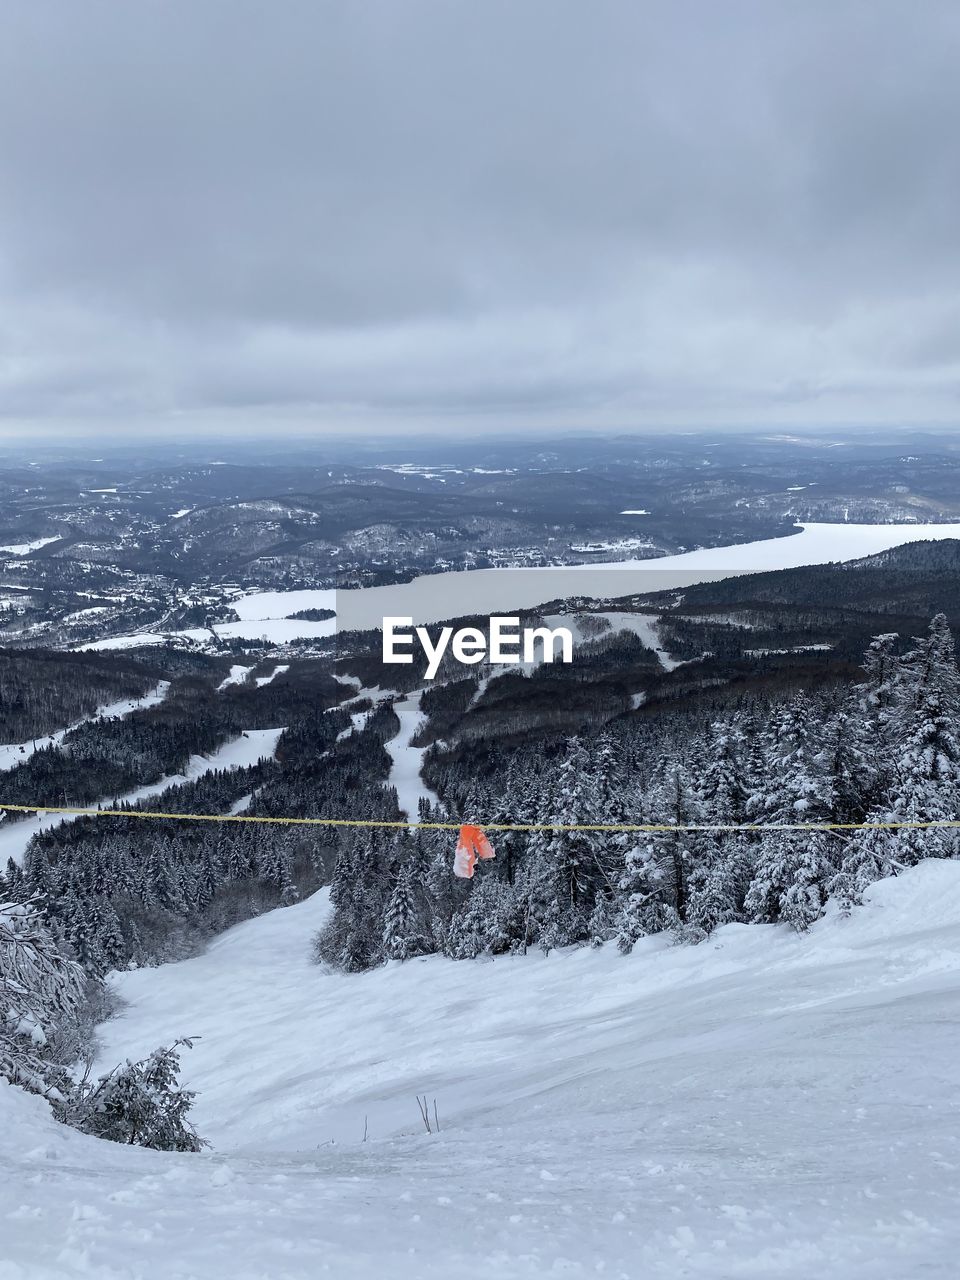 Ski mont tremblant 